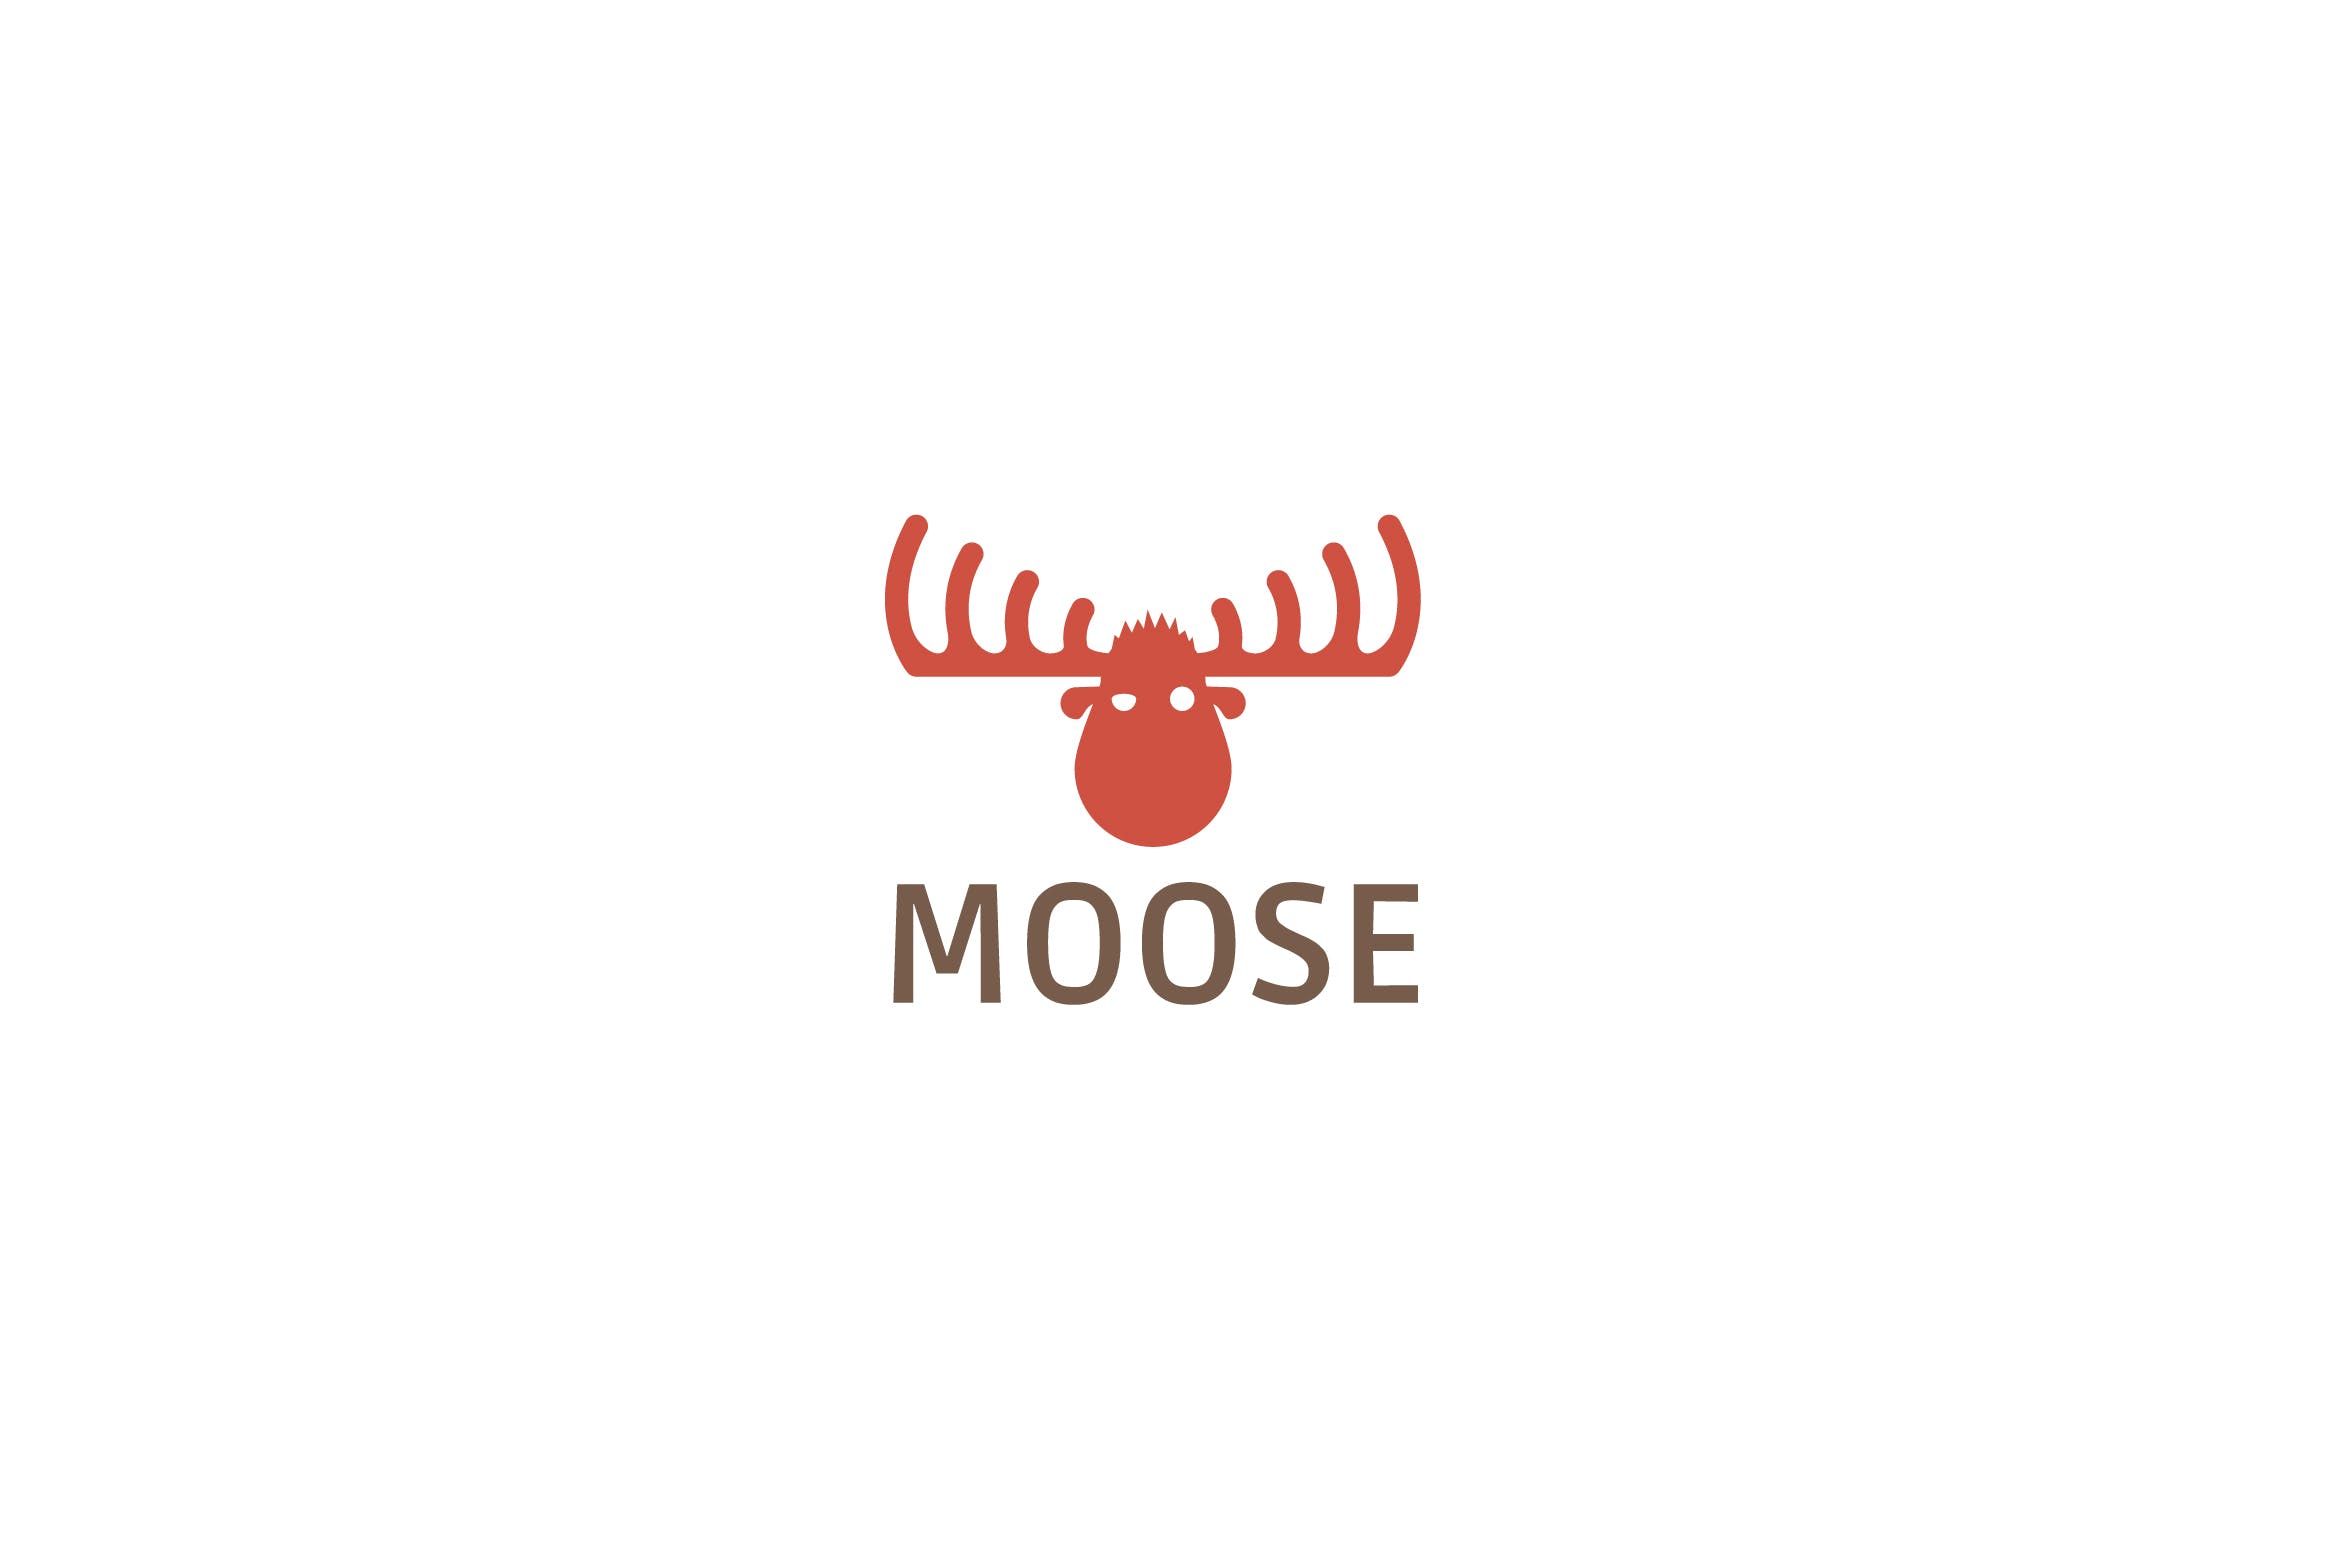 驼鹿图形Logo设计素材中国精选模板 Moose logo template插图